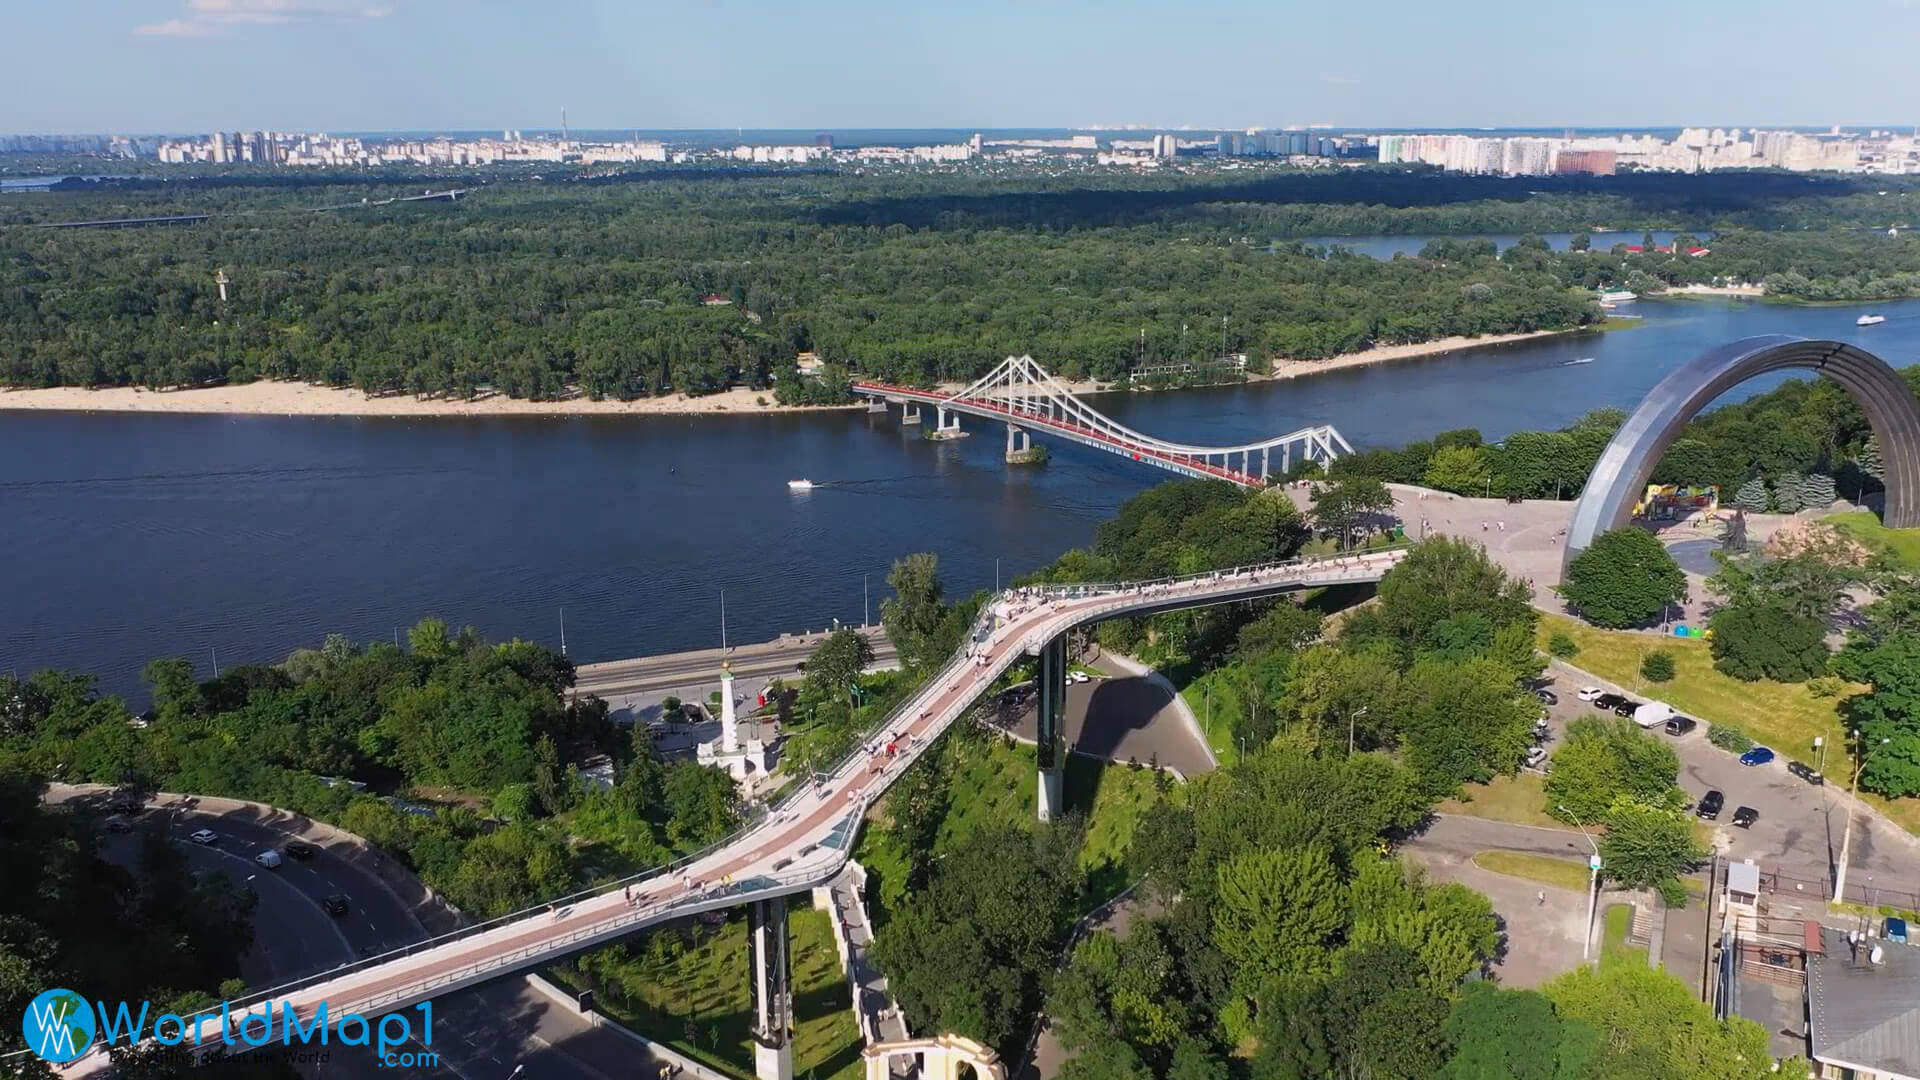 Kyiv Aerial View